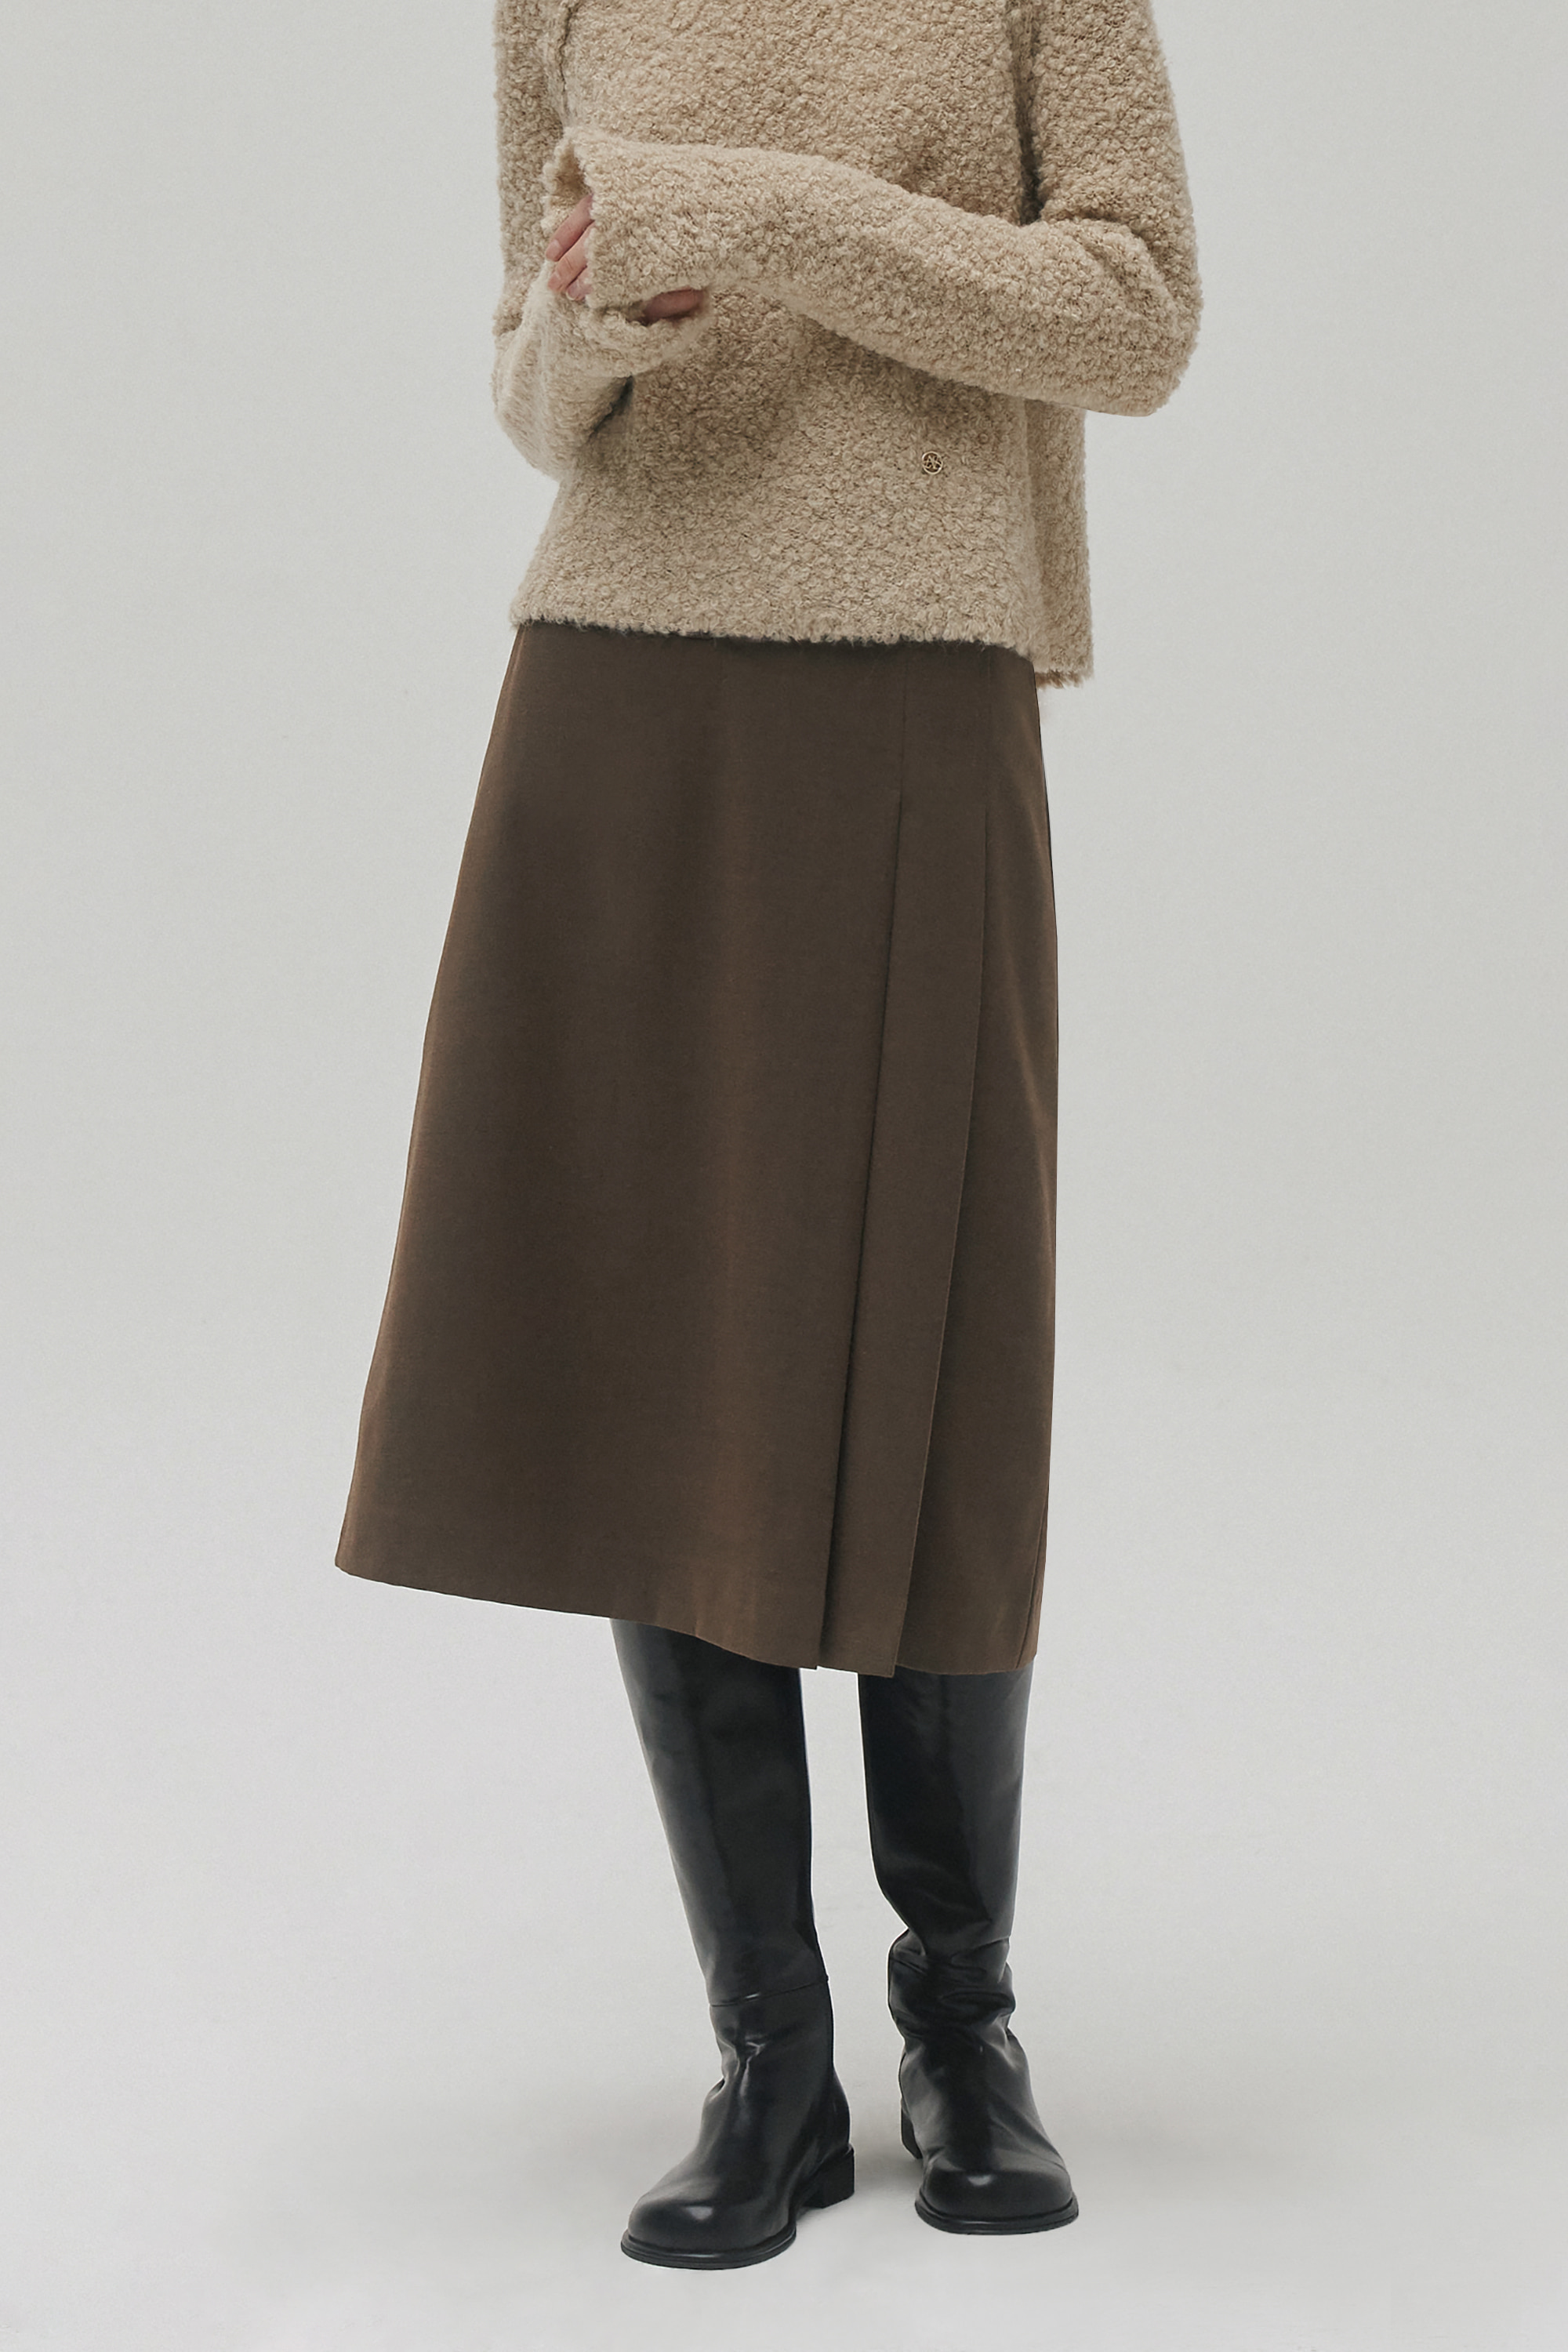 Wool pleats skirt (brown)